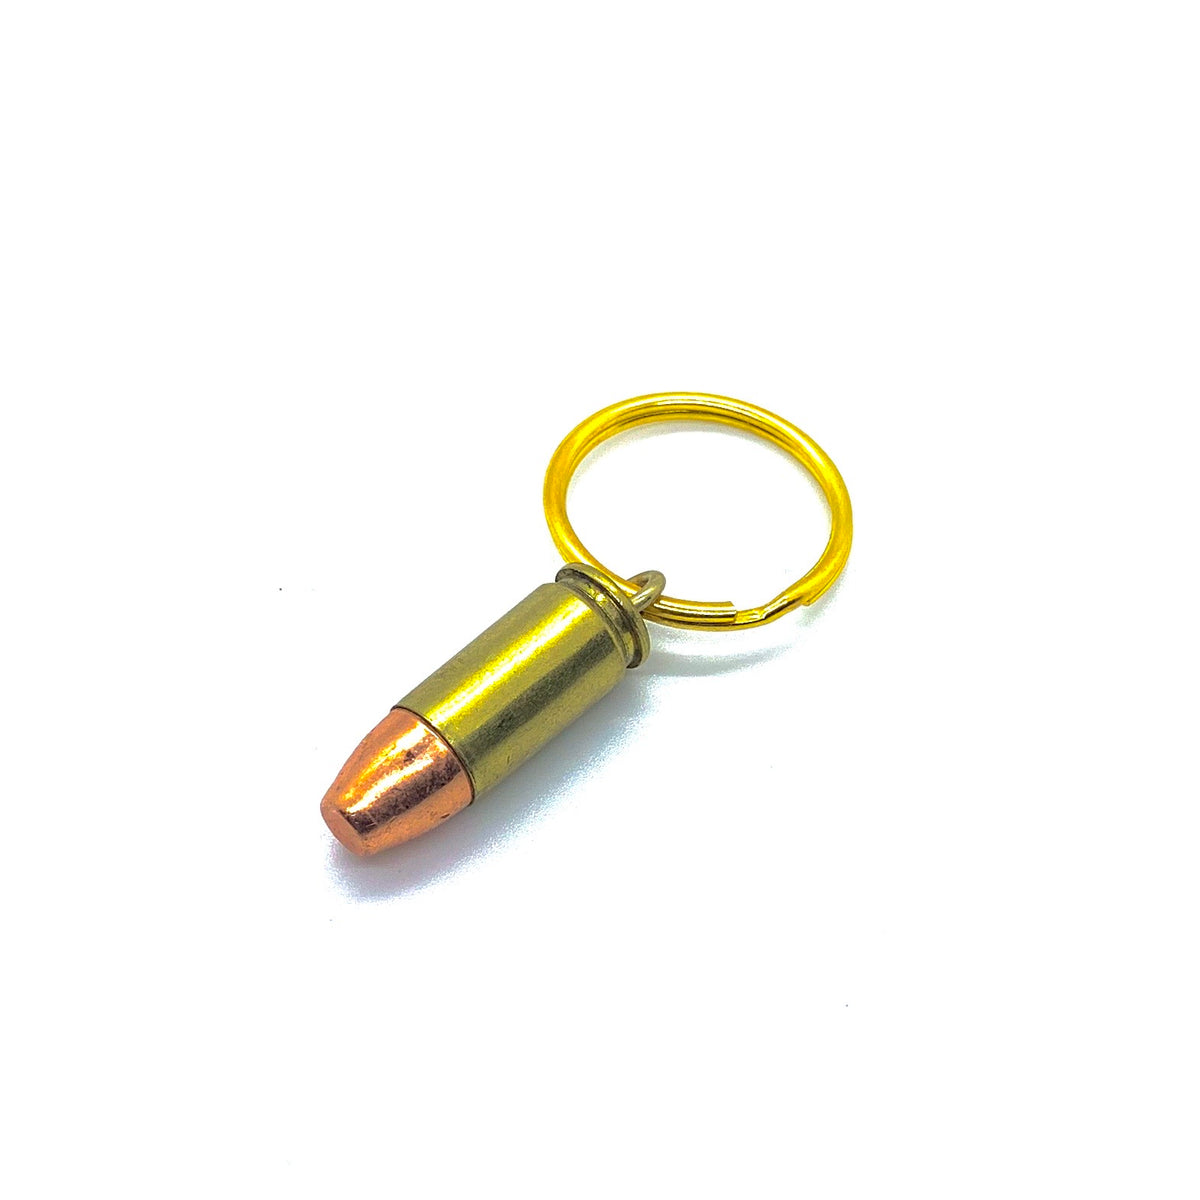 Spent Bullet Keychain